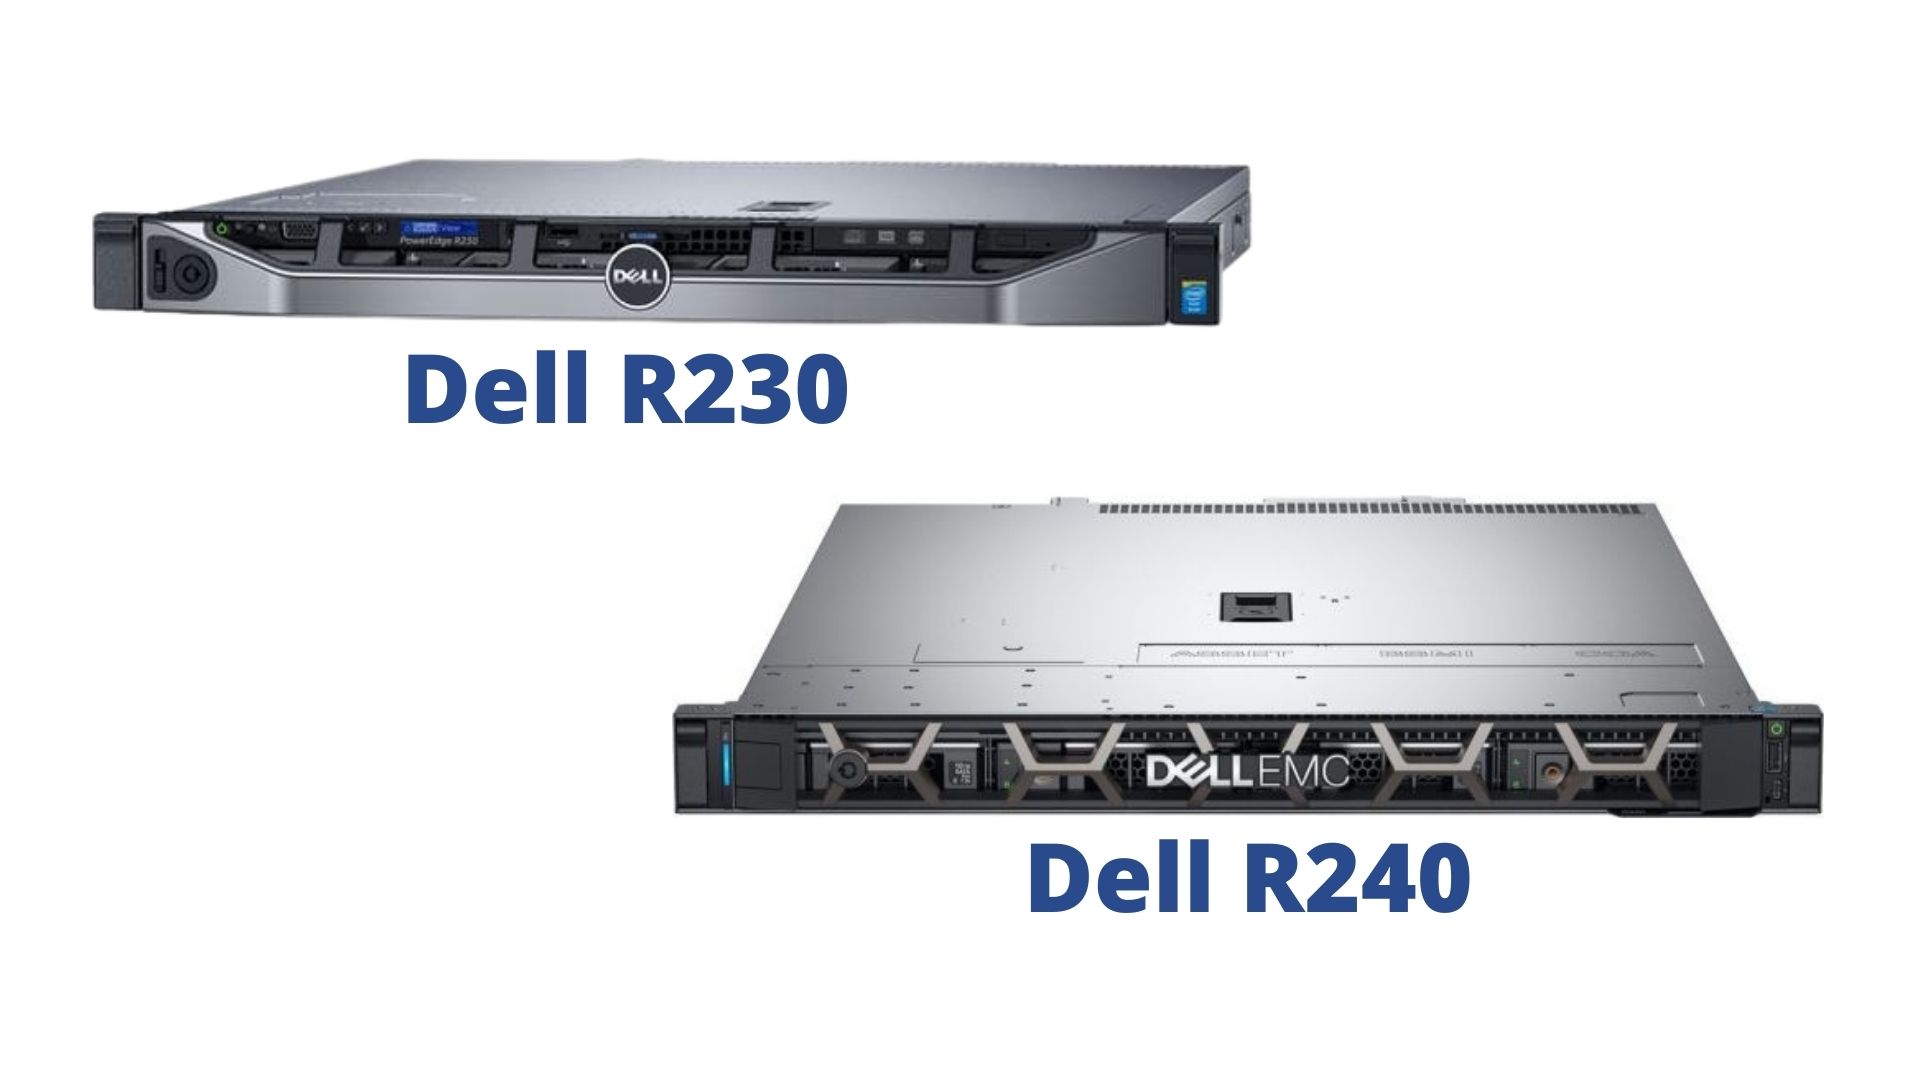 Máy chủ Dell R230 và R240 có những điểm khác biệt gì?